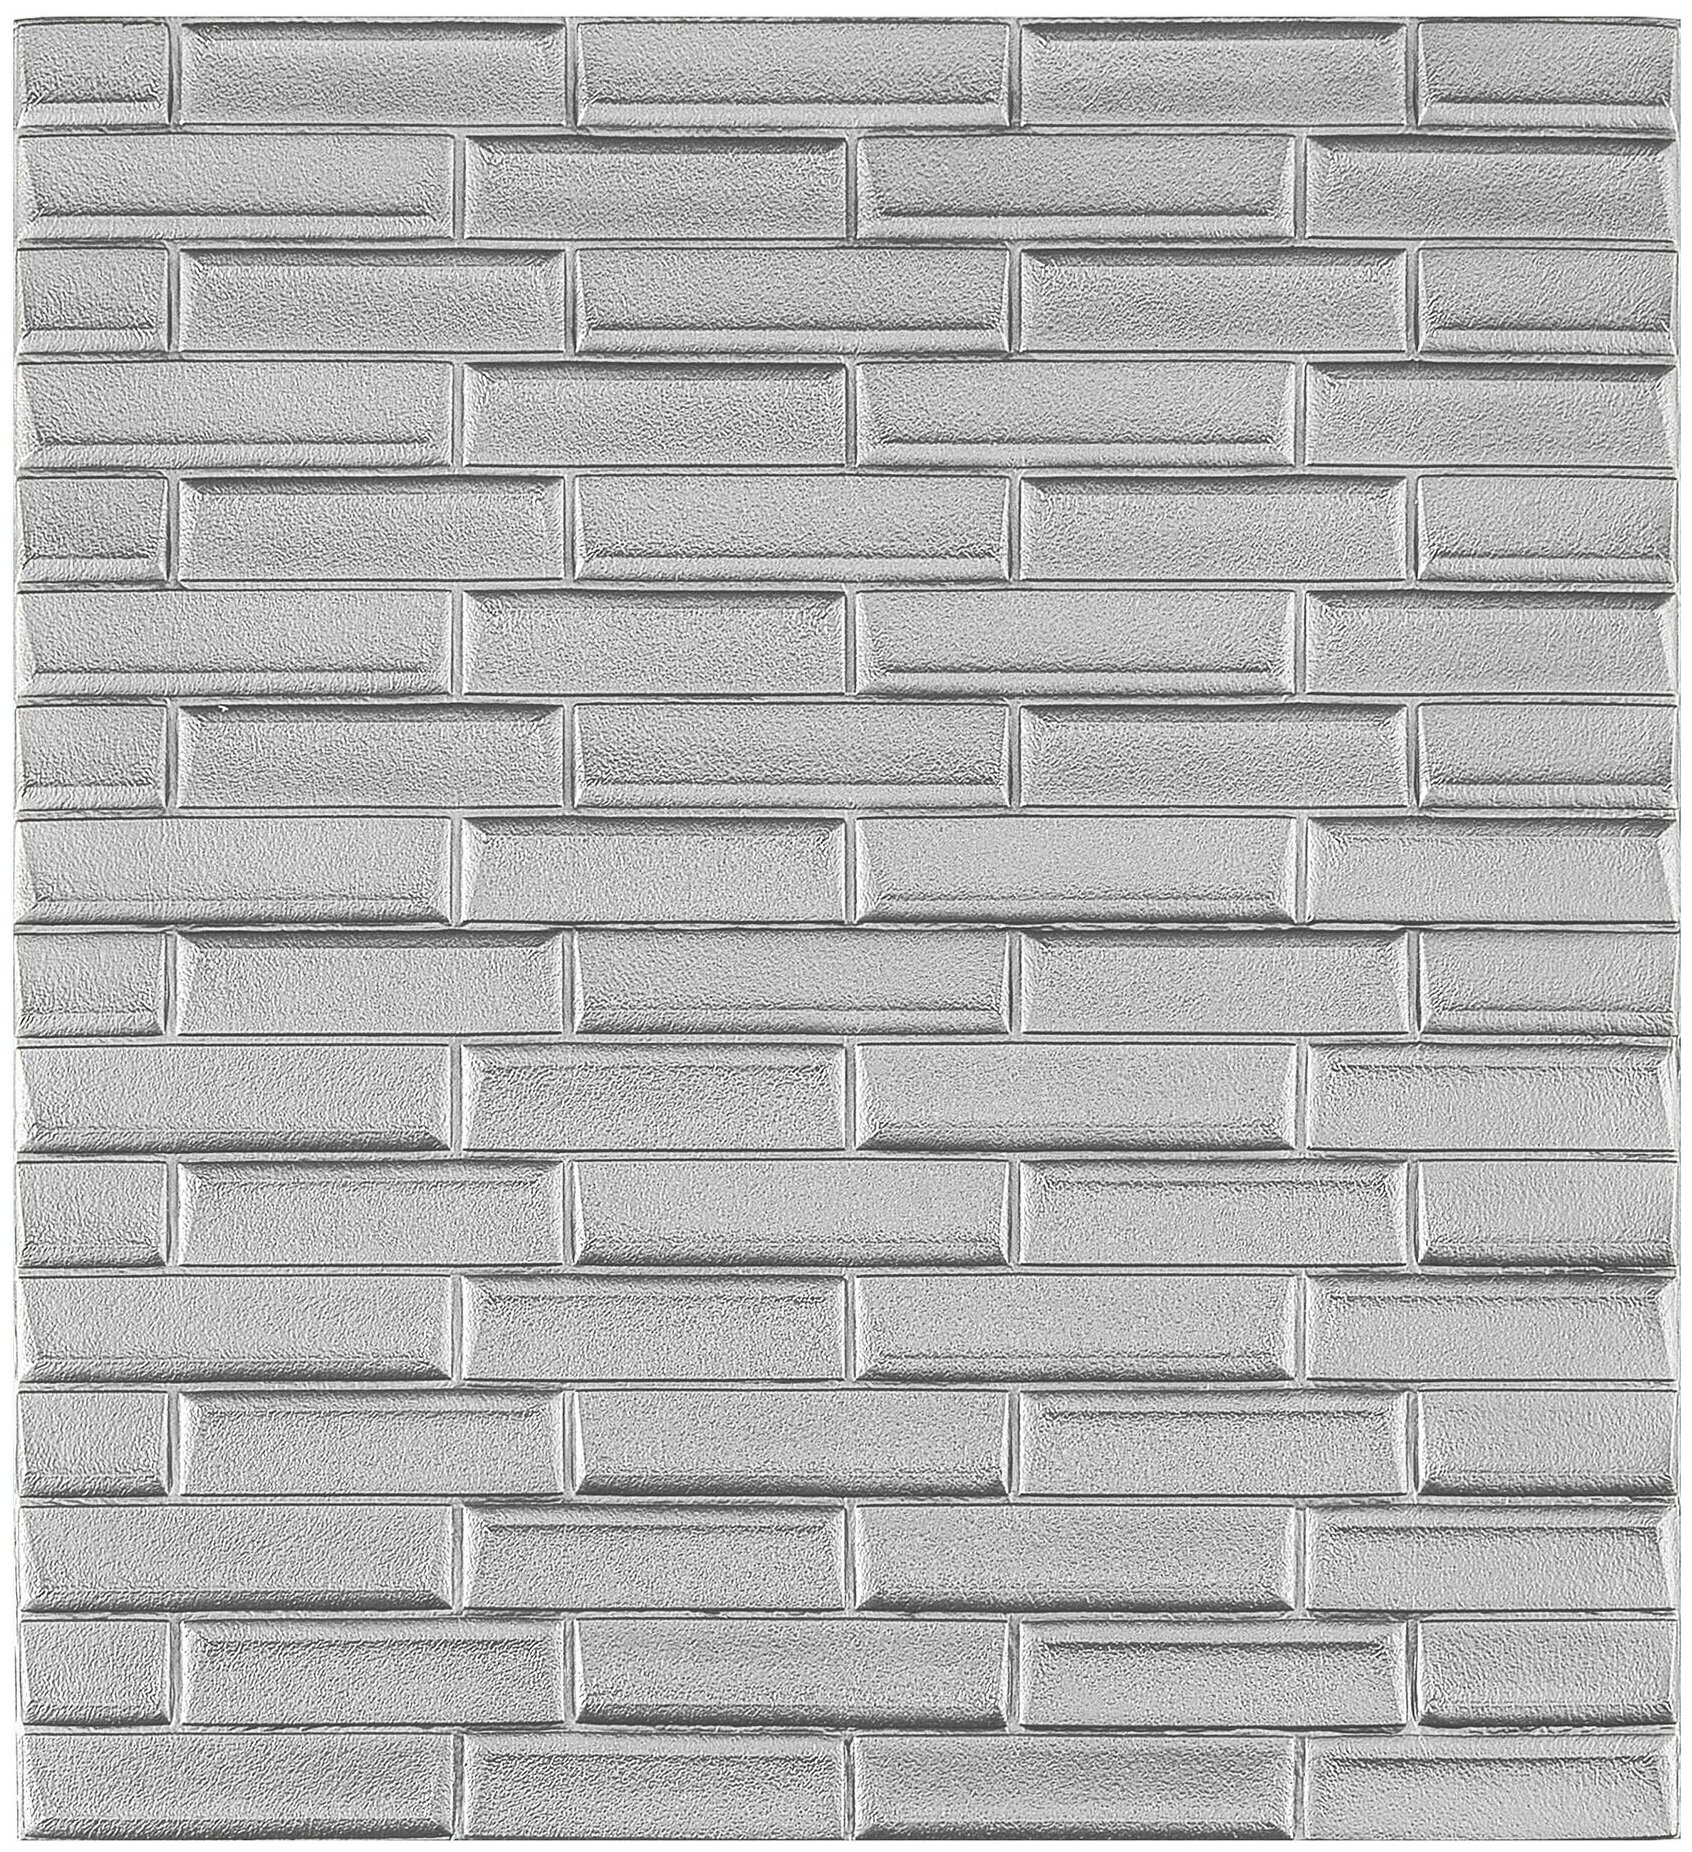 Мягкие самоклеящиеся панели для стен/обои самоклеящиеся/стеновая 3D панель/Скошенный кирпич цвет Cеребристо-серый 70x77см толщина 6мм